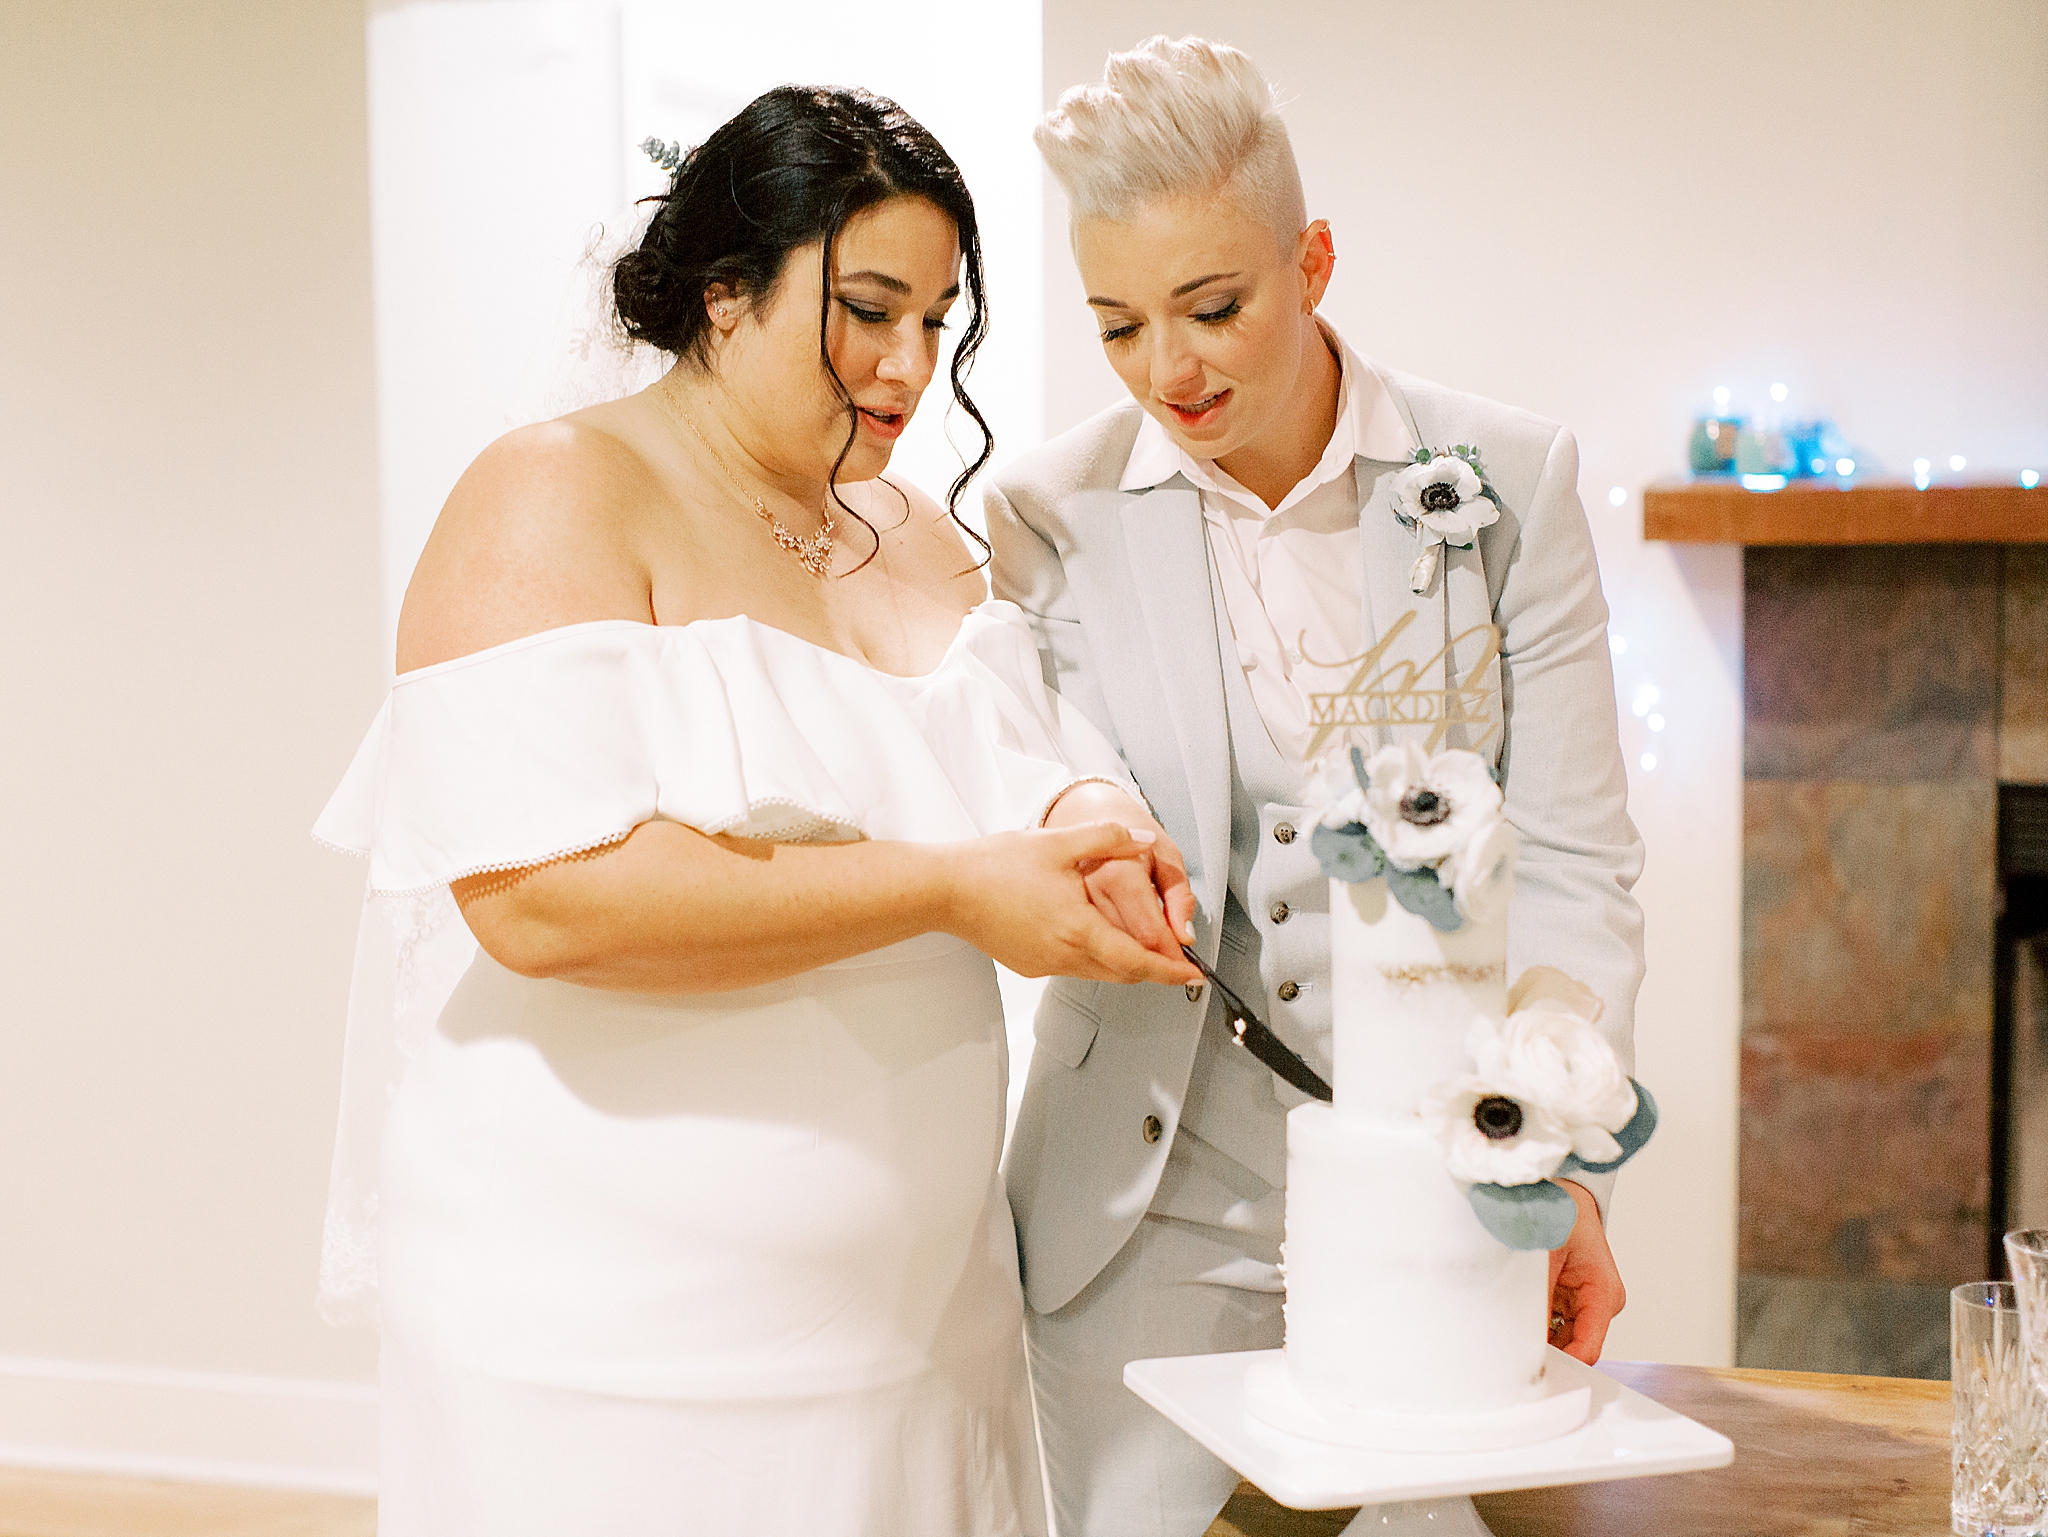 brides cut wedding cake